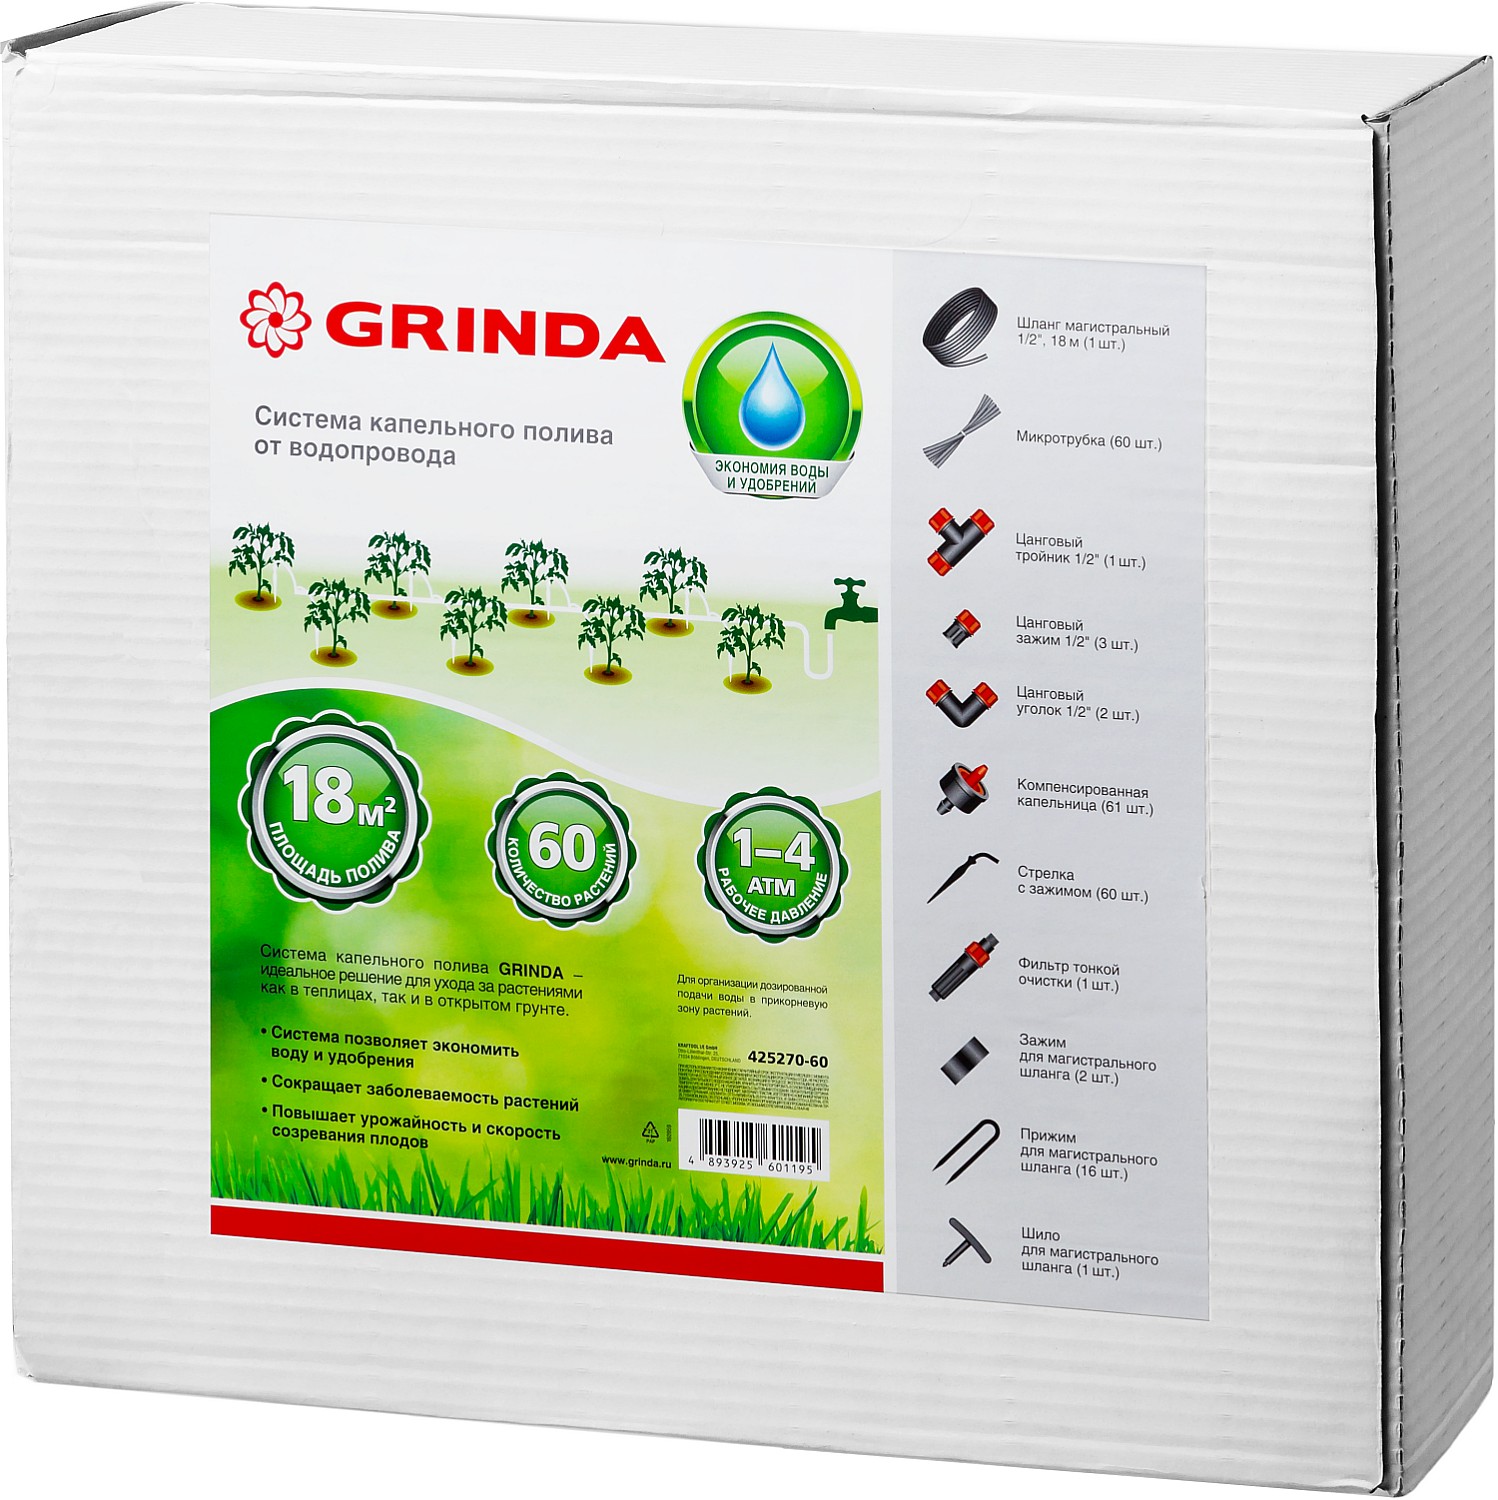 Система капельного полива GRINDA от водопровода, на 60 растений